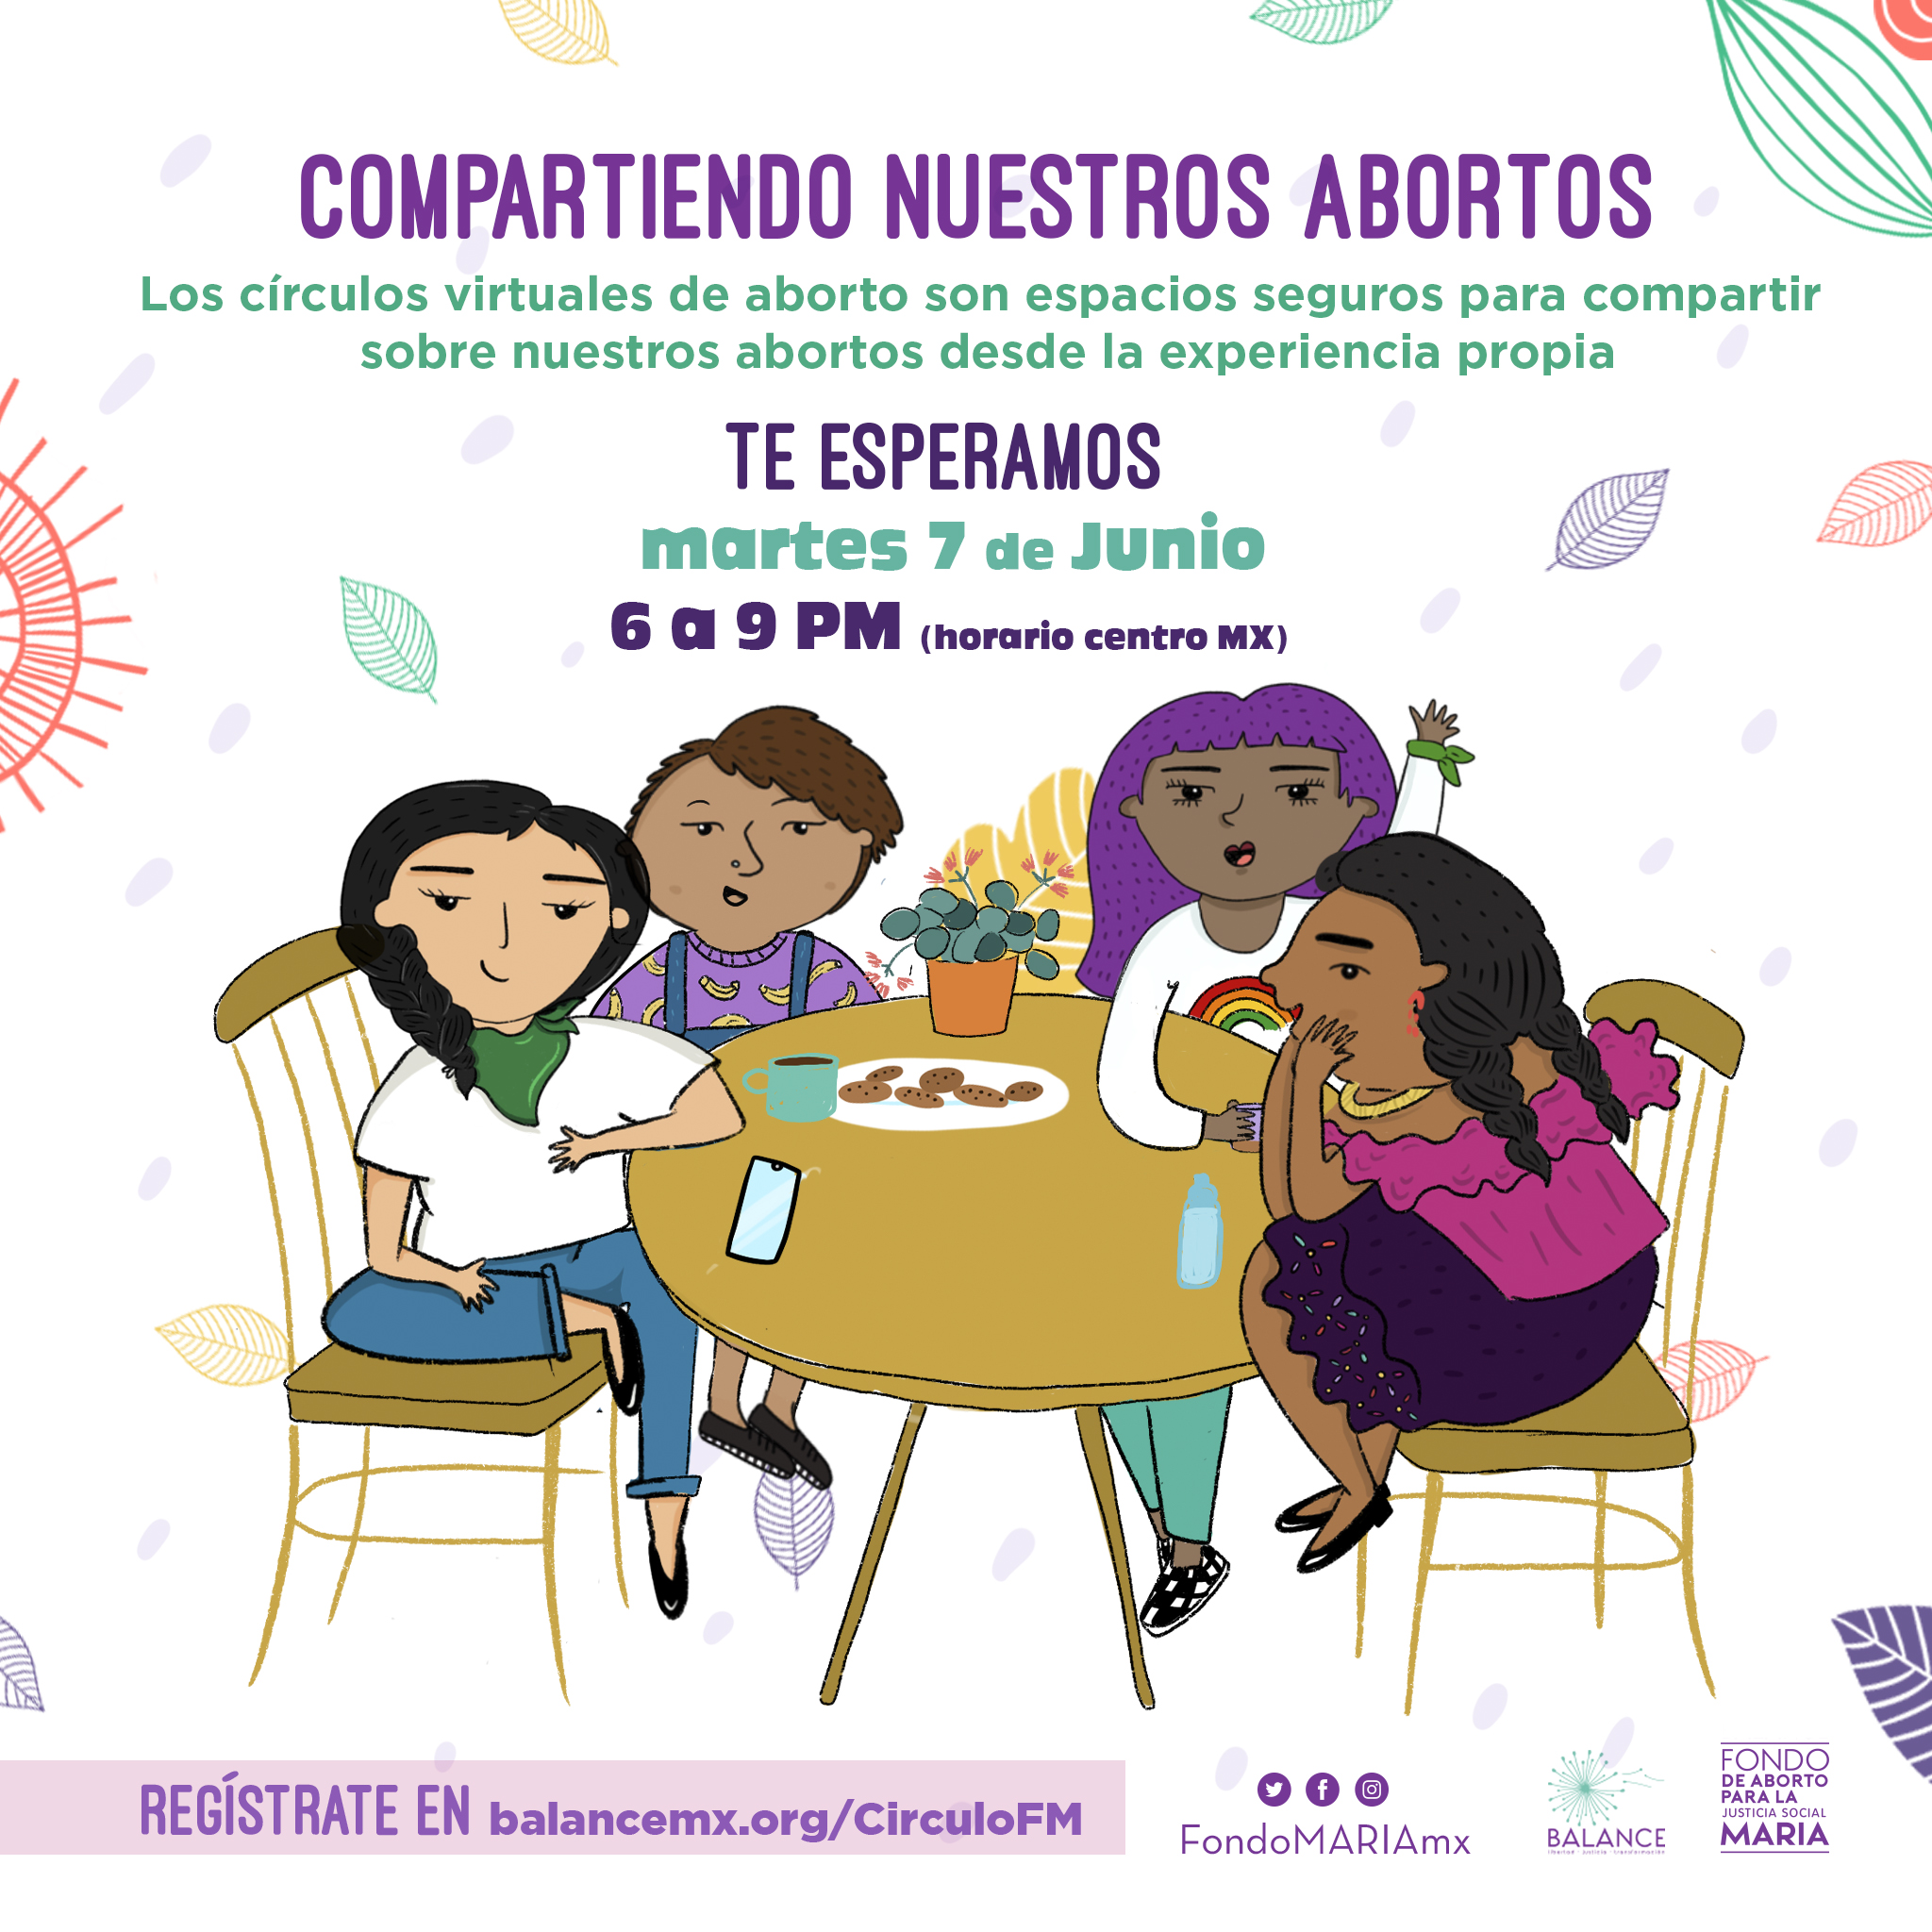 Cartel que dice Compartiendo nuestros abortos, los círculos virtuales de aborto son espacios seguros para compartir sobre nuestros abortos desde la experiencia propia. Te esperamos martes 7 de junio, 6 a 9 pm, horario centro de México